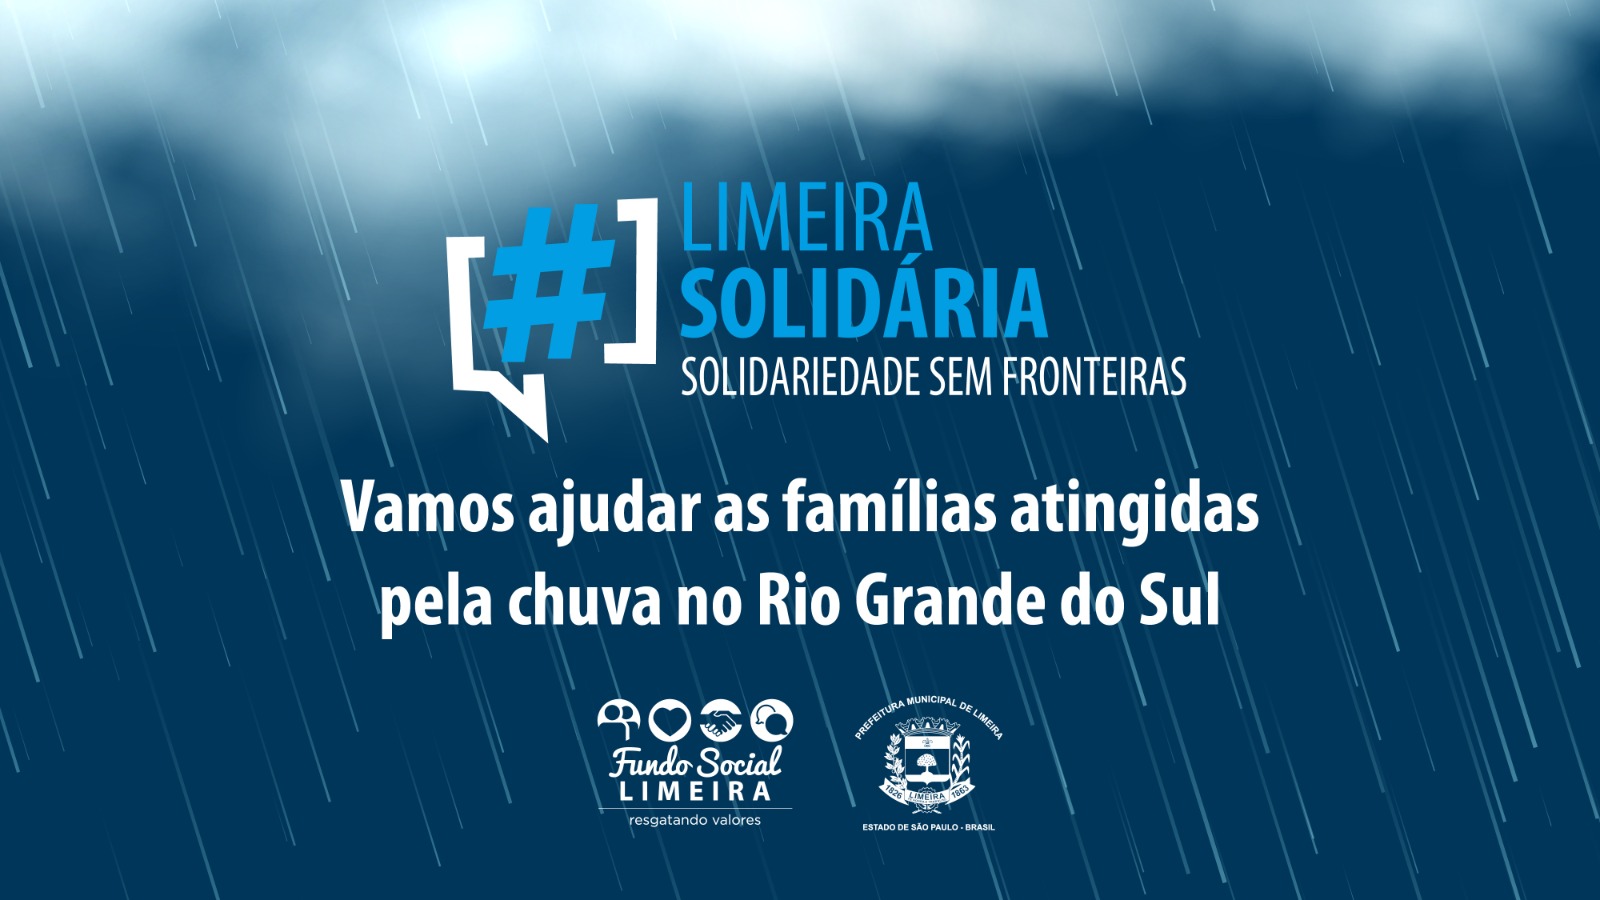 UBSs e Centros Comunitários vão receber doações para campanha “Solidariedade Sem Fronteiras”; Praça Toledo Barros terá drive-thru